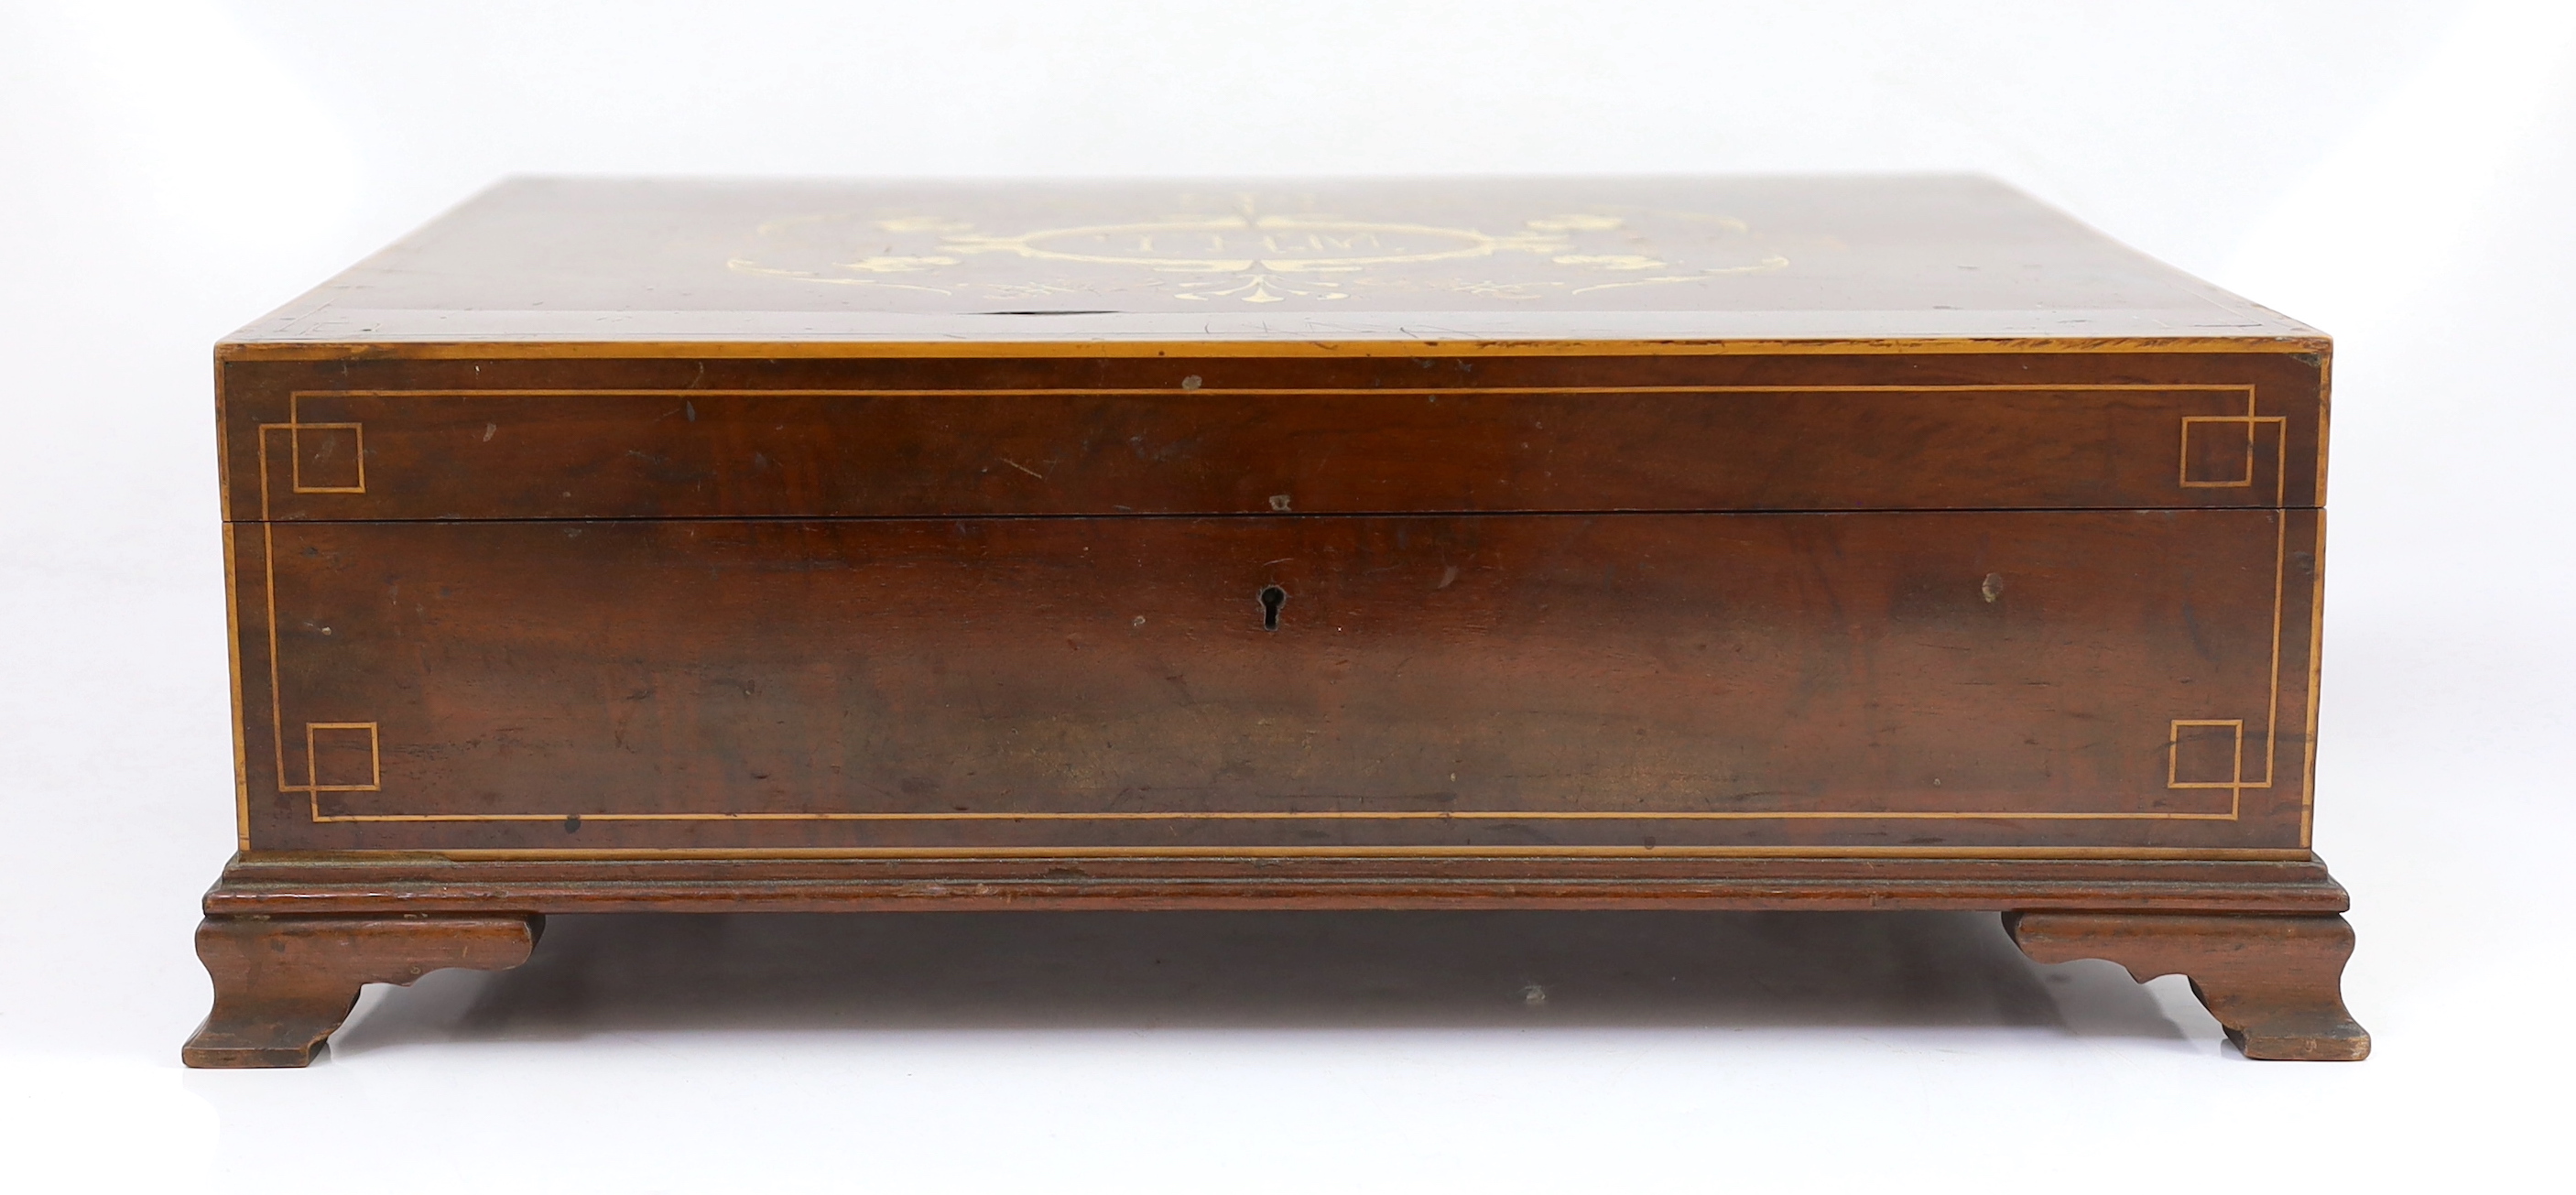 An ornate Victorian boxed presentation photograph album, casket 44cm wide, 37cm deep, 15cm high